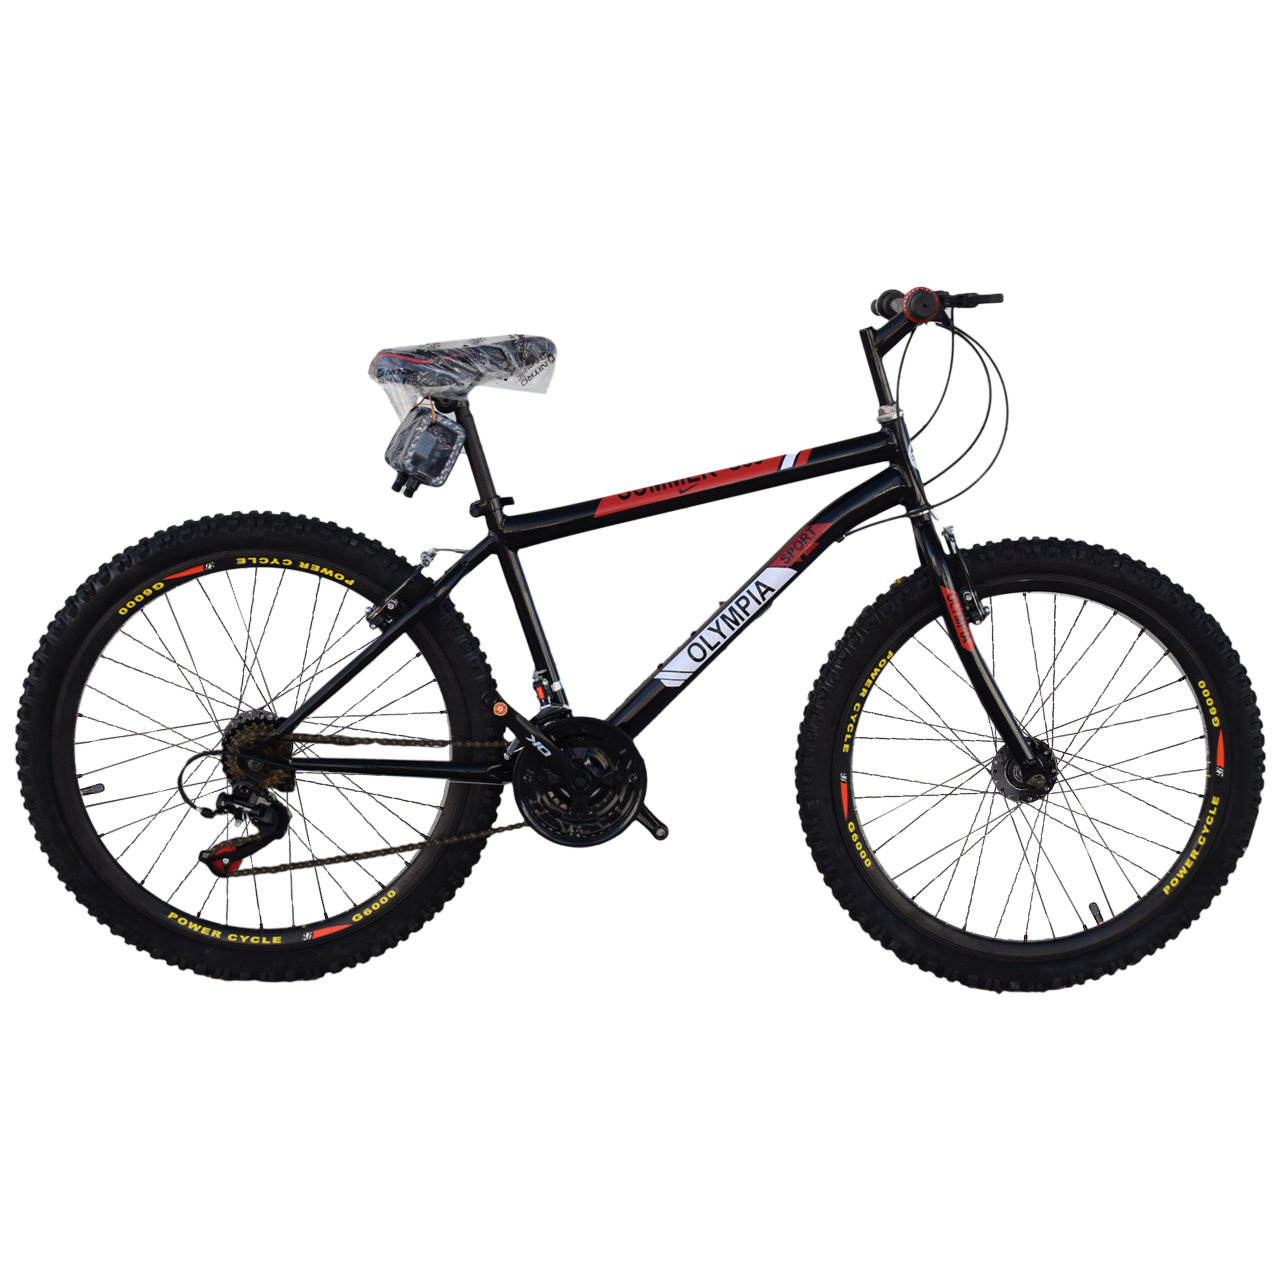 نکته خرید - قیمت روز دوچرخه کوهستان المپیا مدل 0003 سایز 26 خرید